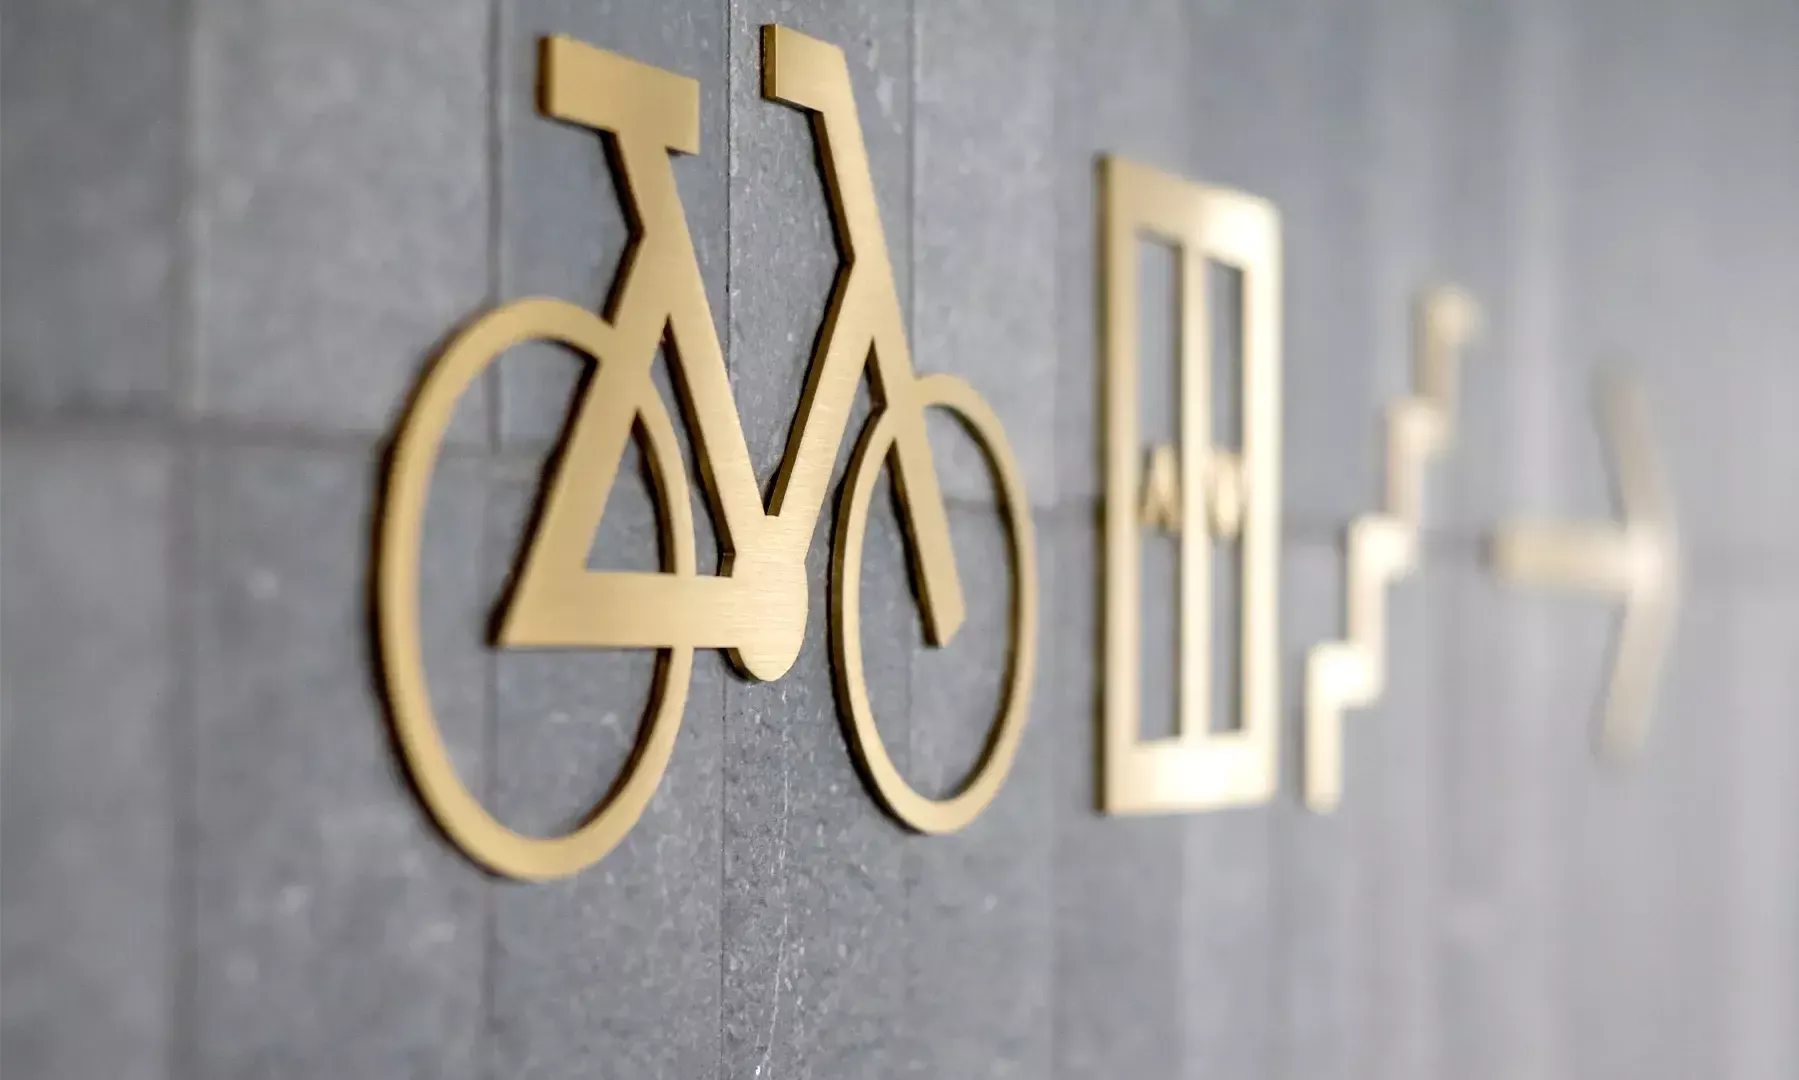 Pittogramma di bicicletta - Cartello per bicicletta in metallo con pittogrammi